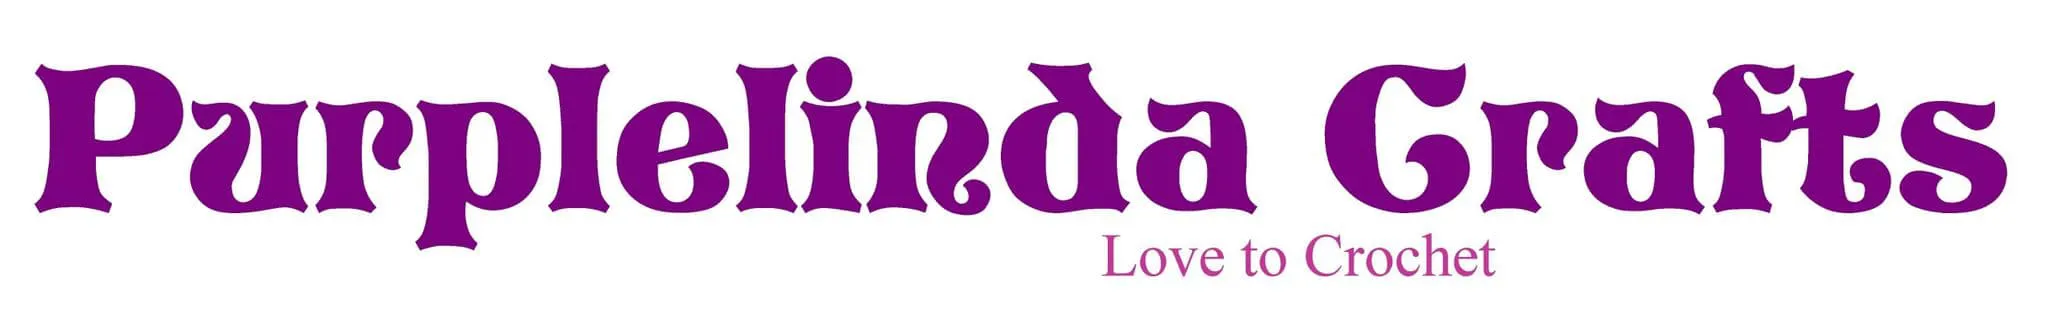  Purplelinda Crafts Promo Code